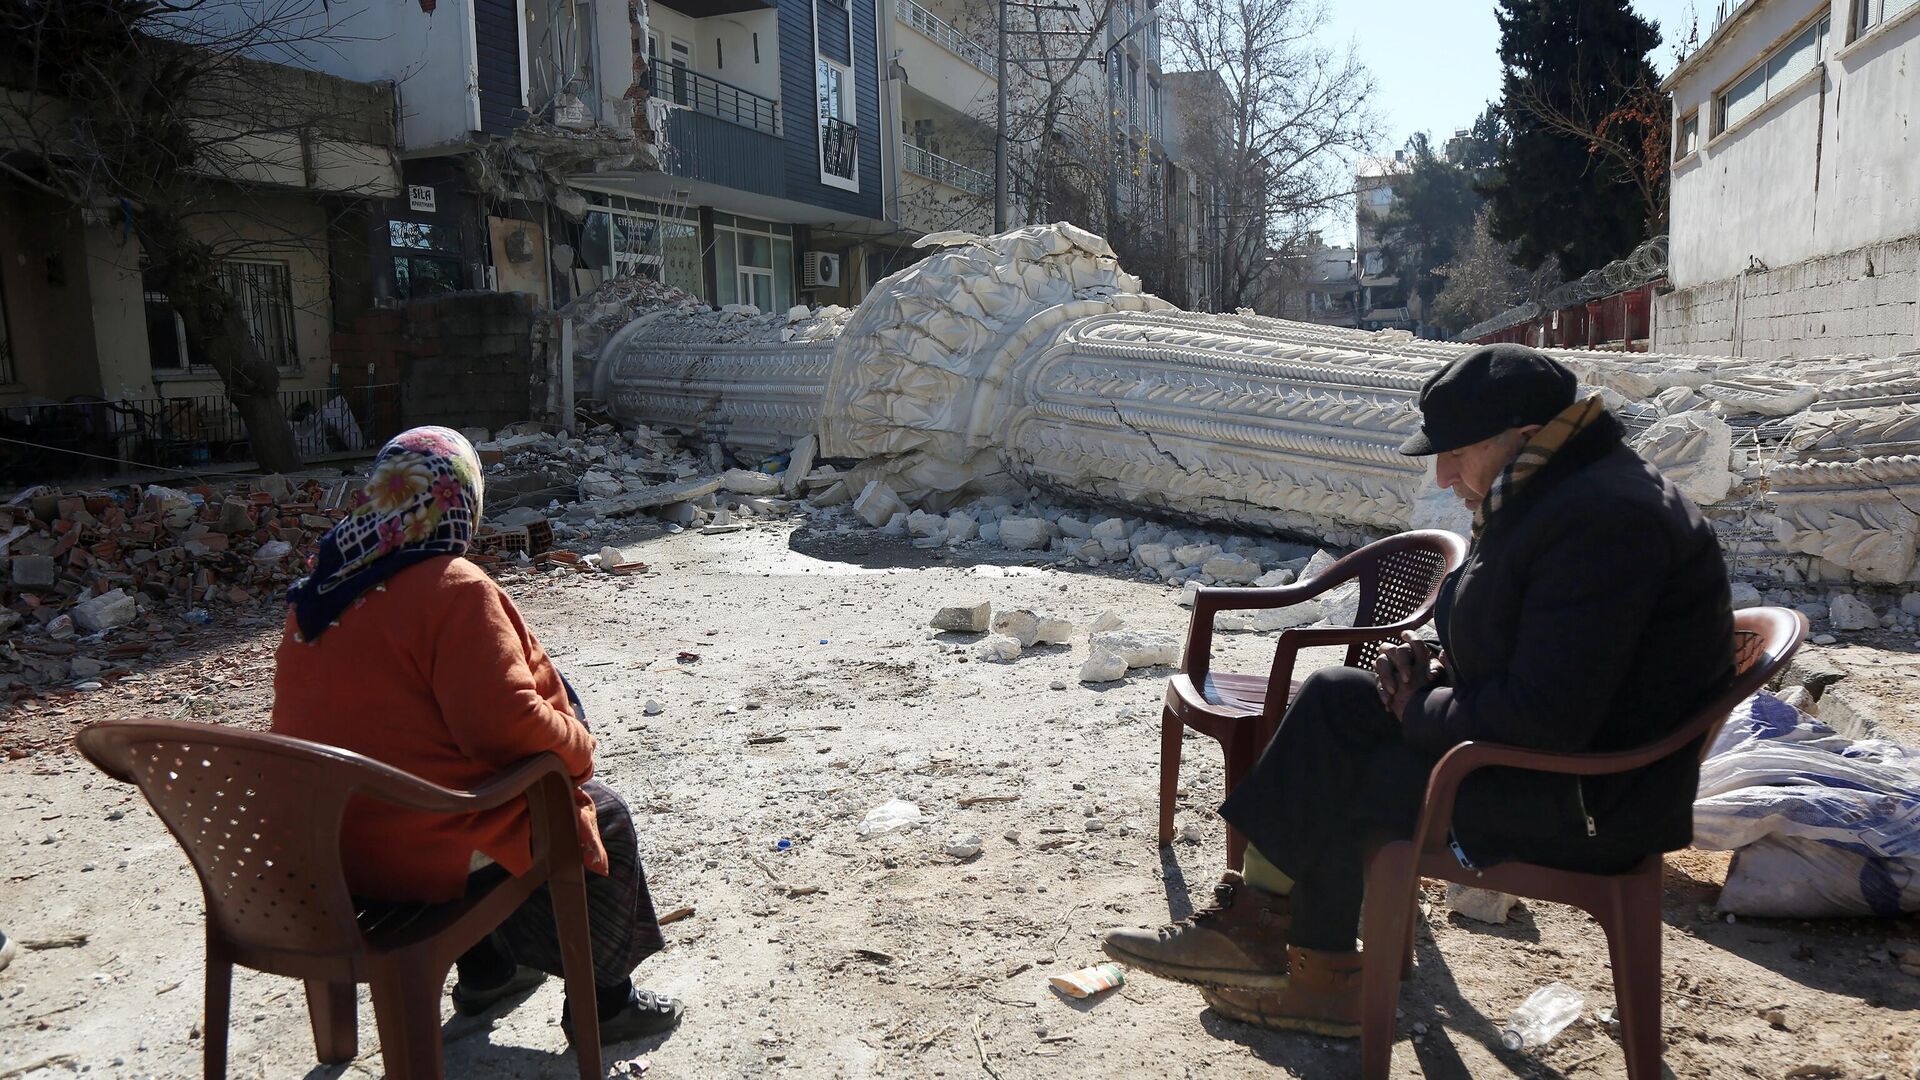 Жители на улице пострадавшего от землетрясения турецкого города - РИА Новости, 1920, 20.02.2023